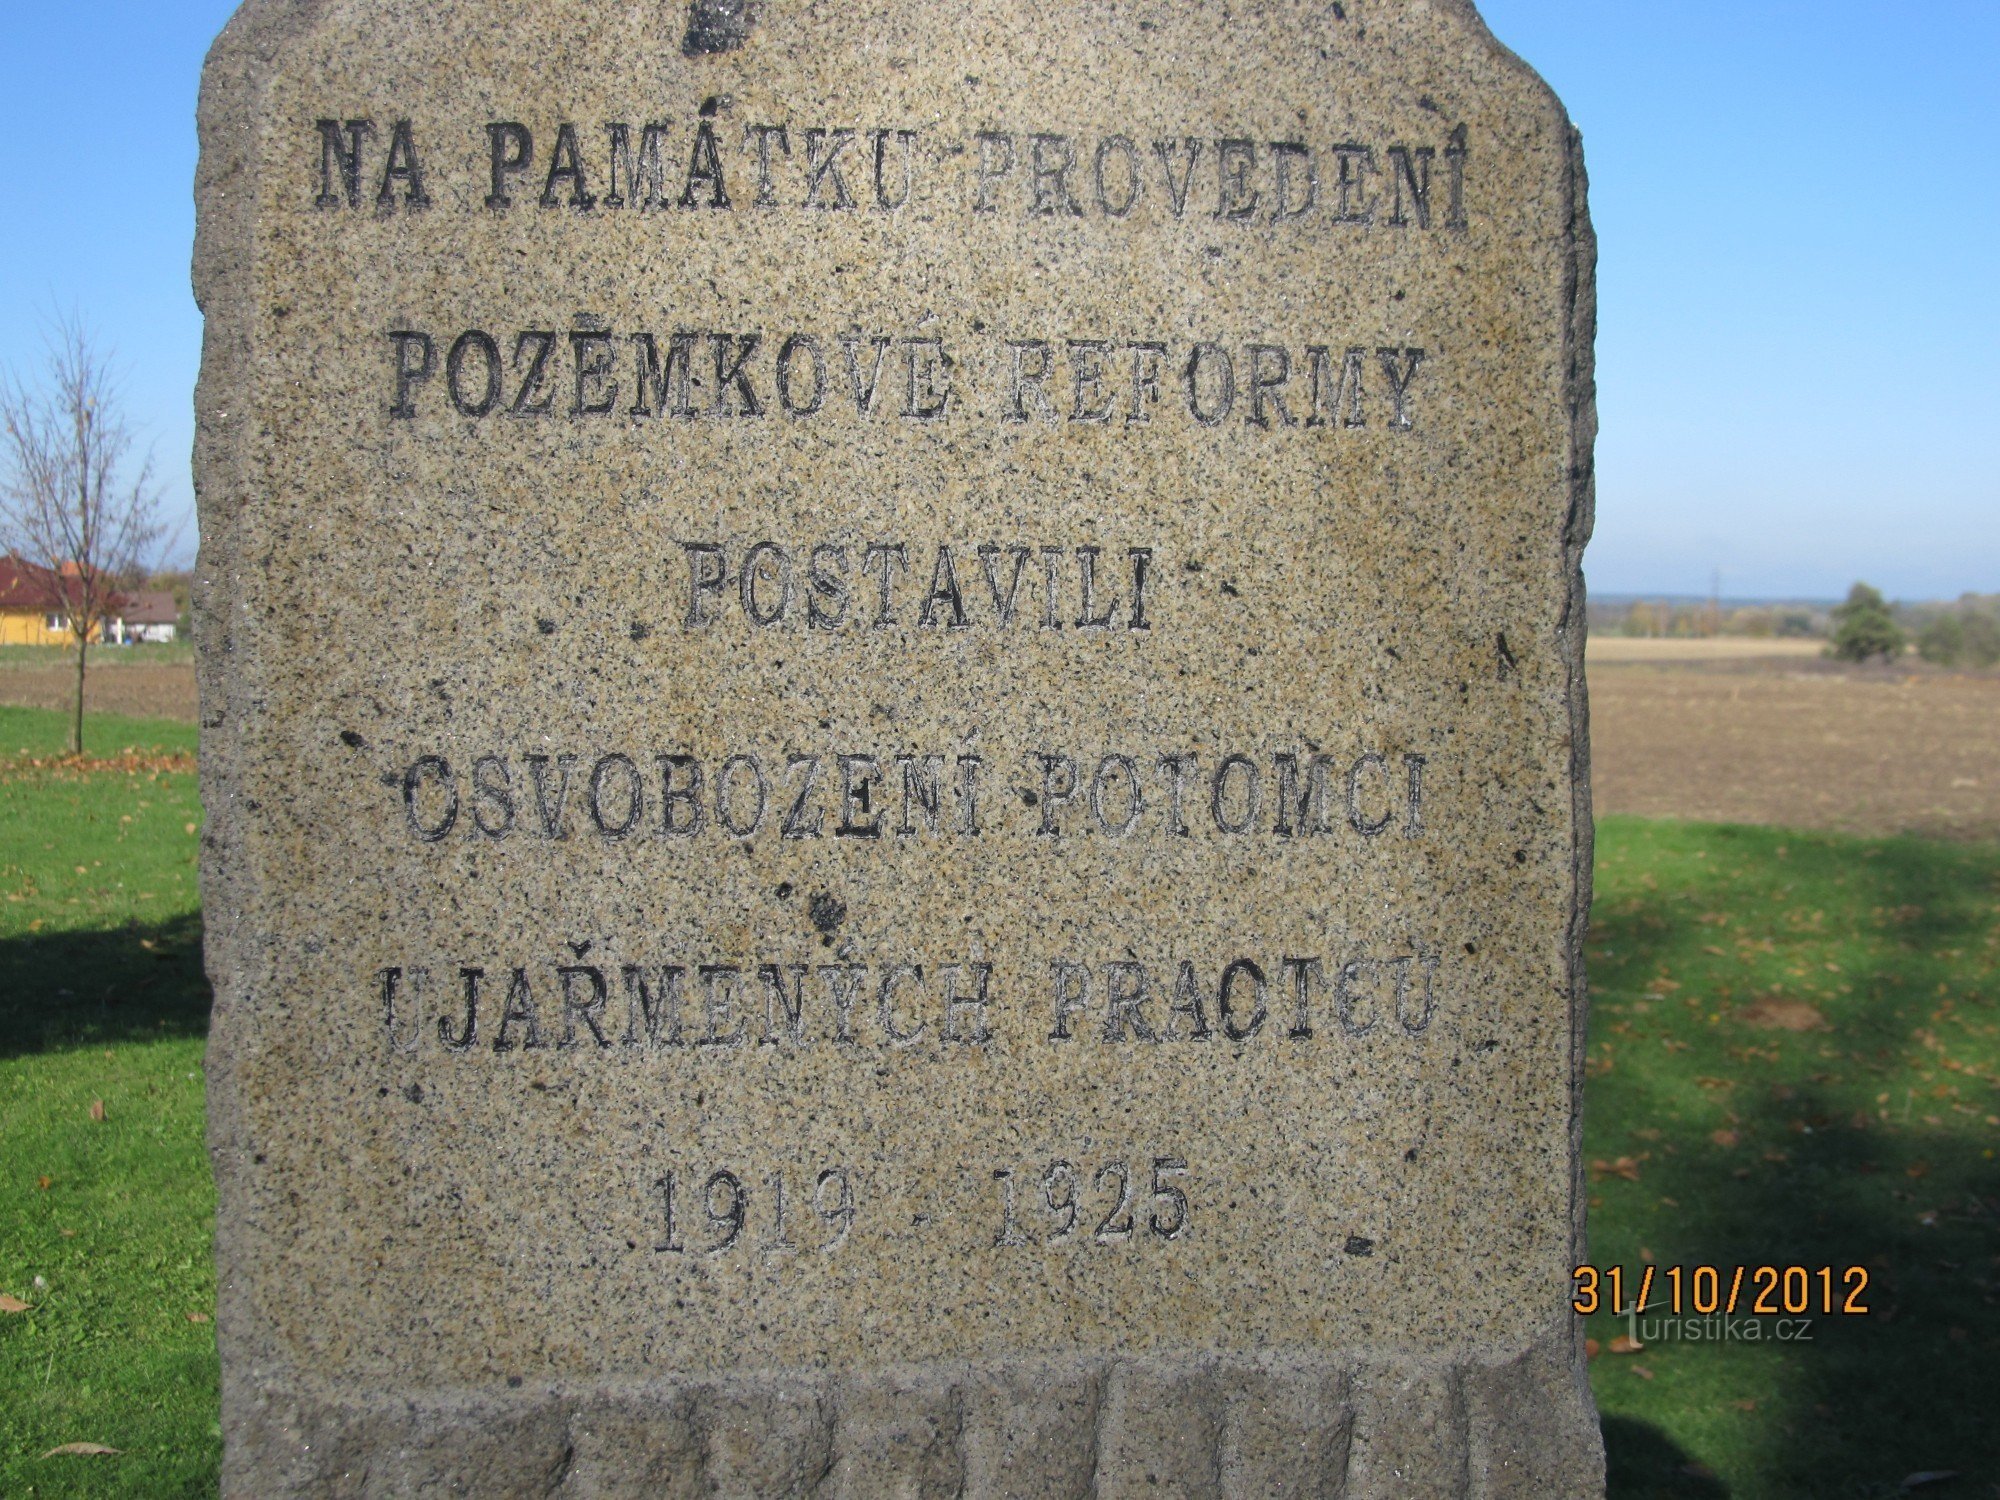 Maareformin muistomerkki vuosilta 1919-1938 Hlízovissa hautausmaan edessä - merkintä muistomerkissä